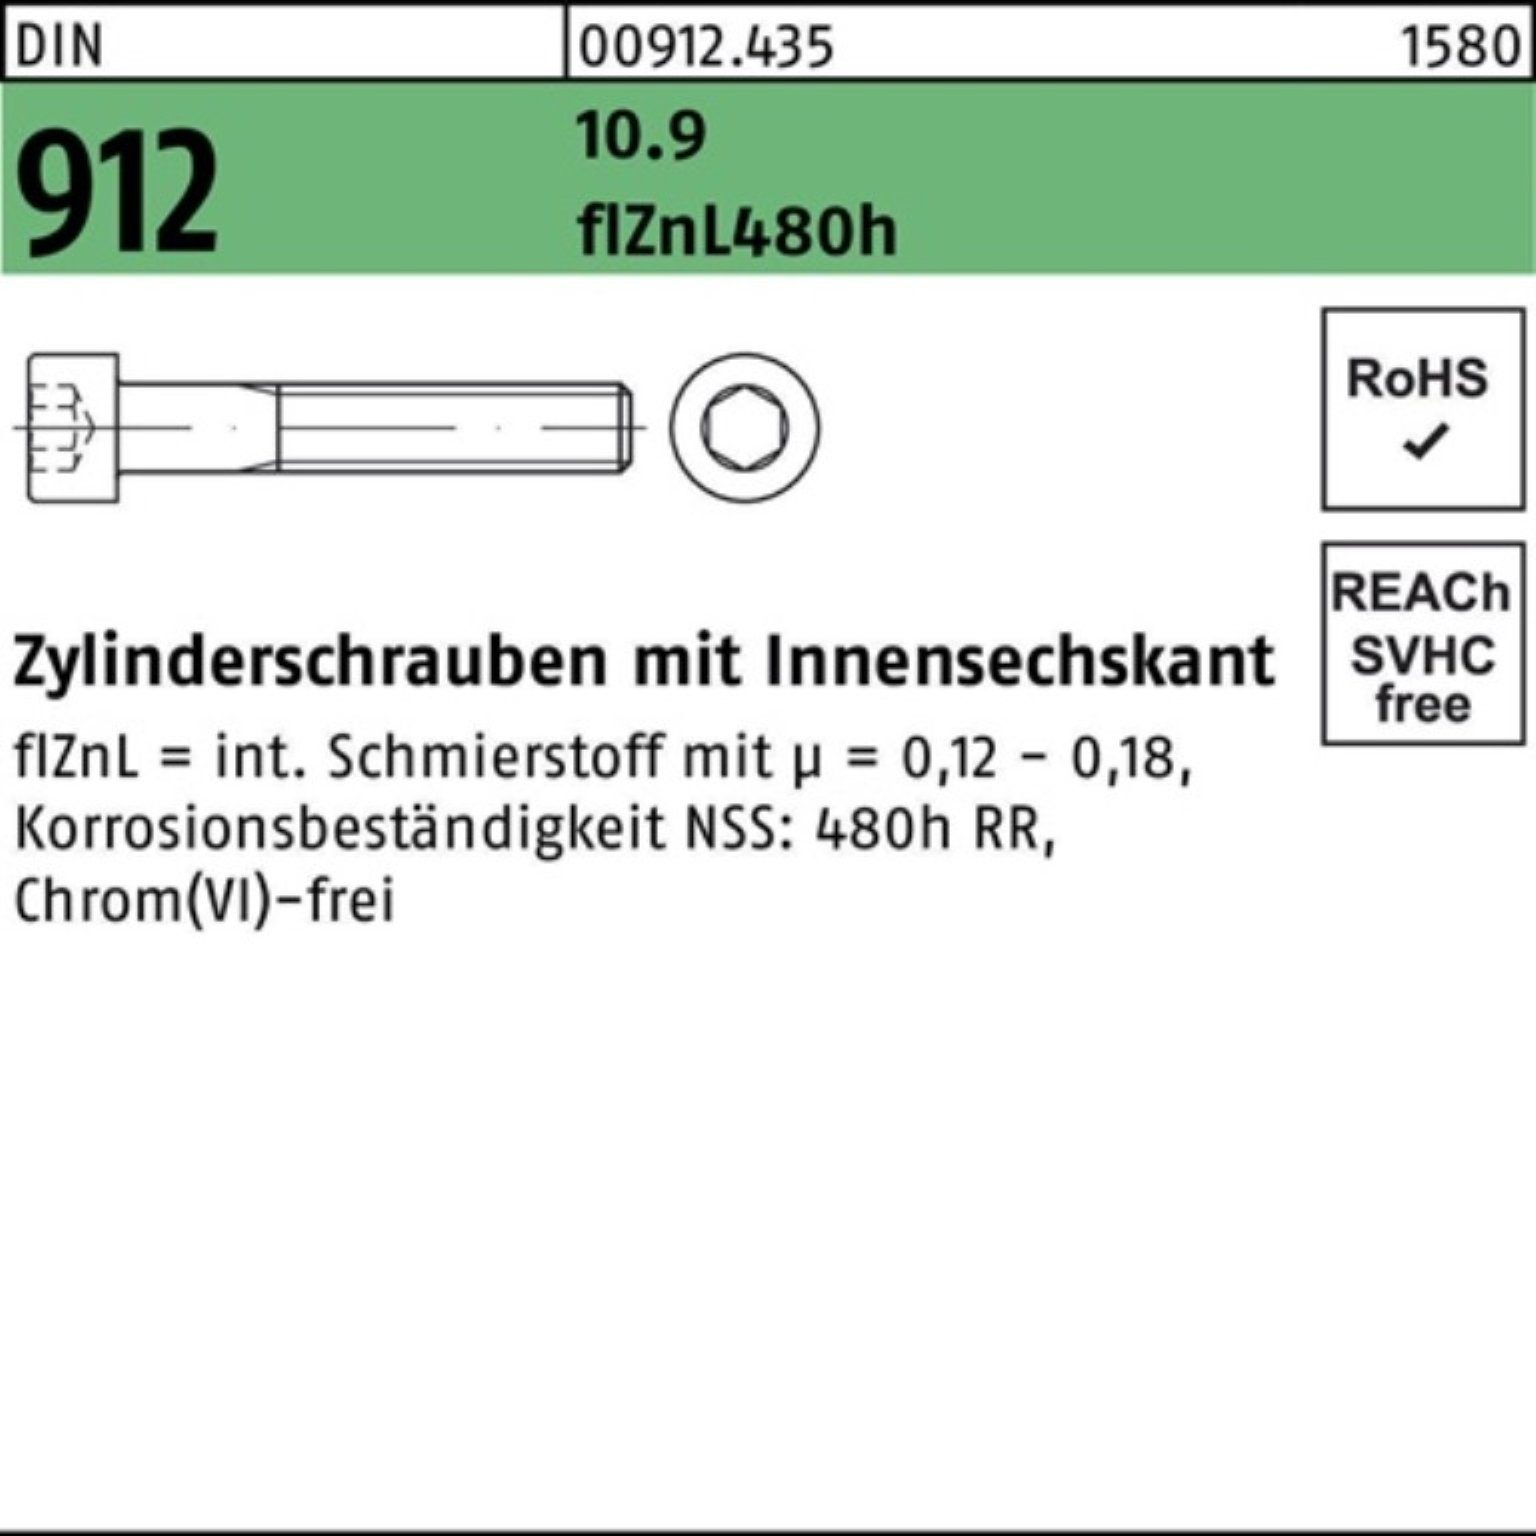 Reyher Zylinderschraube 100er Pack DIN Zylinderschraube 10.9 912 flZnL/nc/x Innen-6kt M16x200